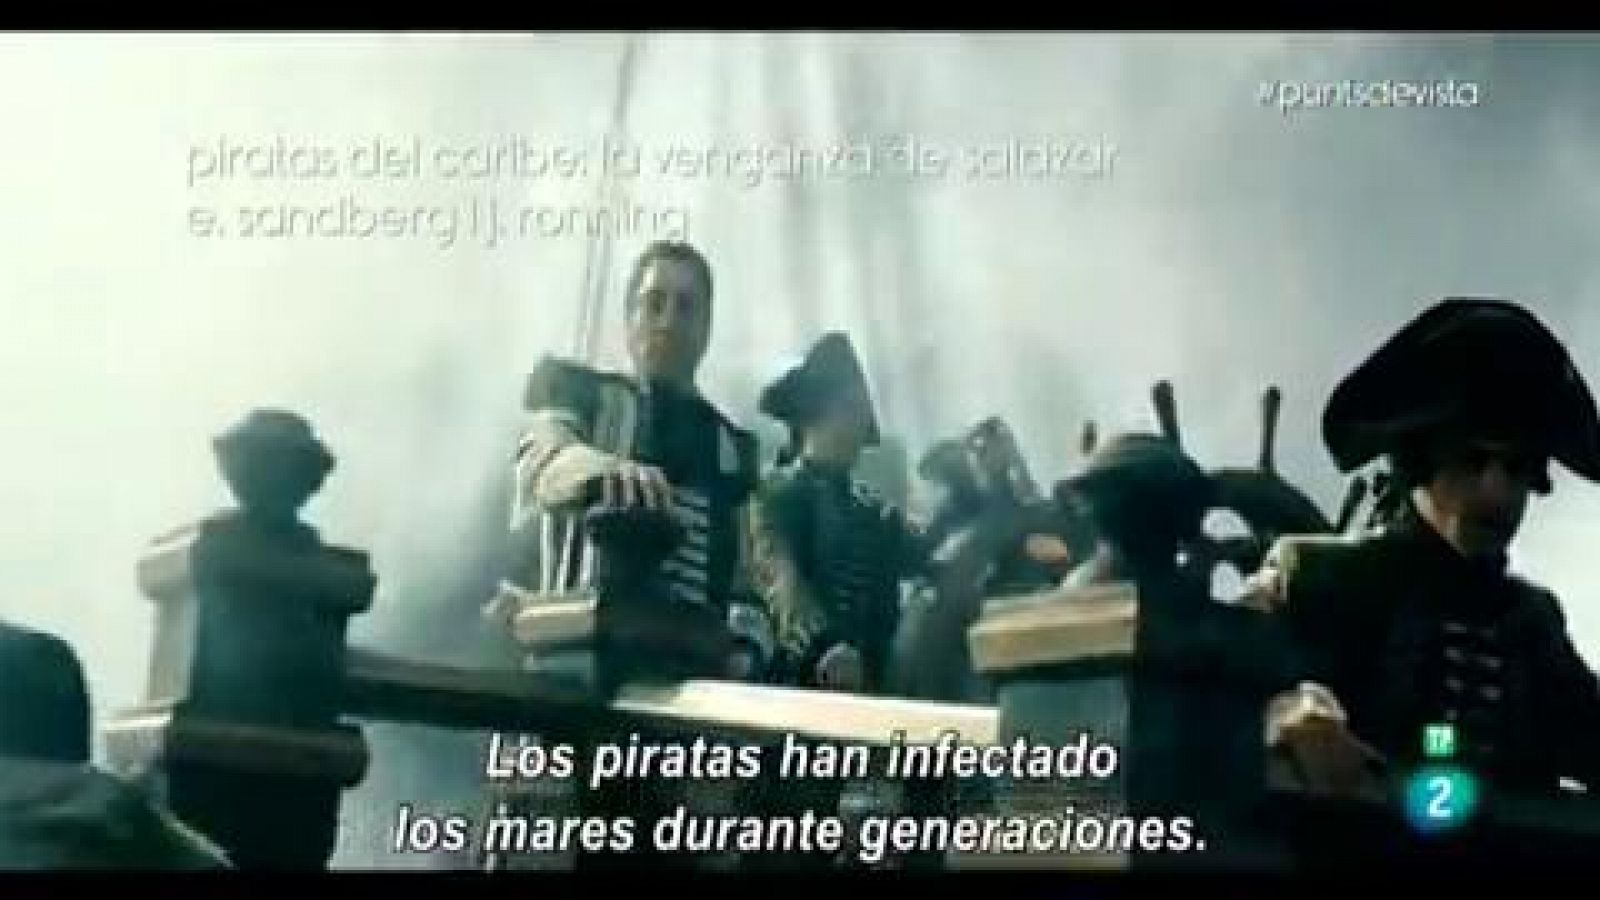 Punts de vista: "Pirates del Carib" i d'altres estrenes cinematogràfiques | RTVE Play